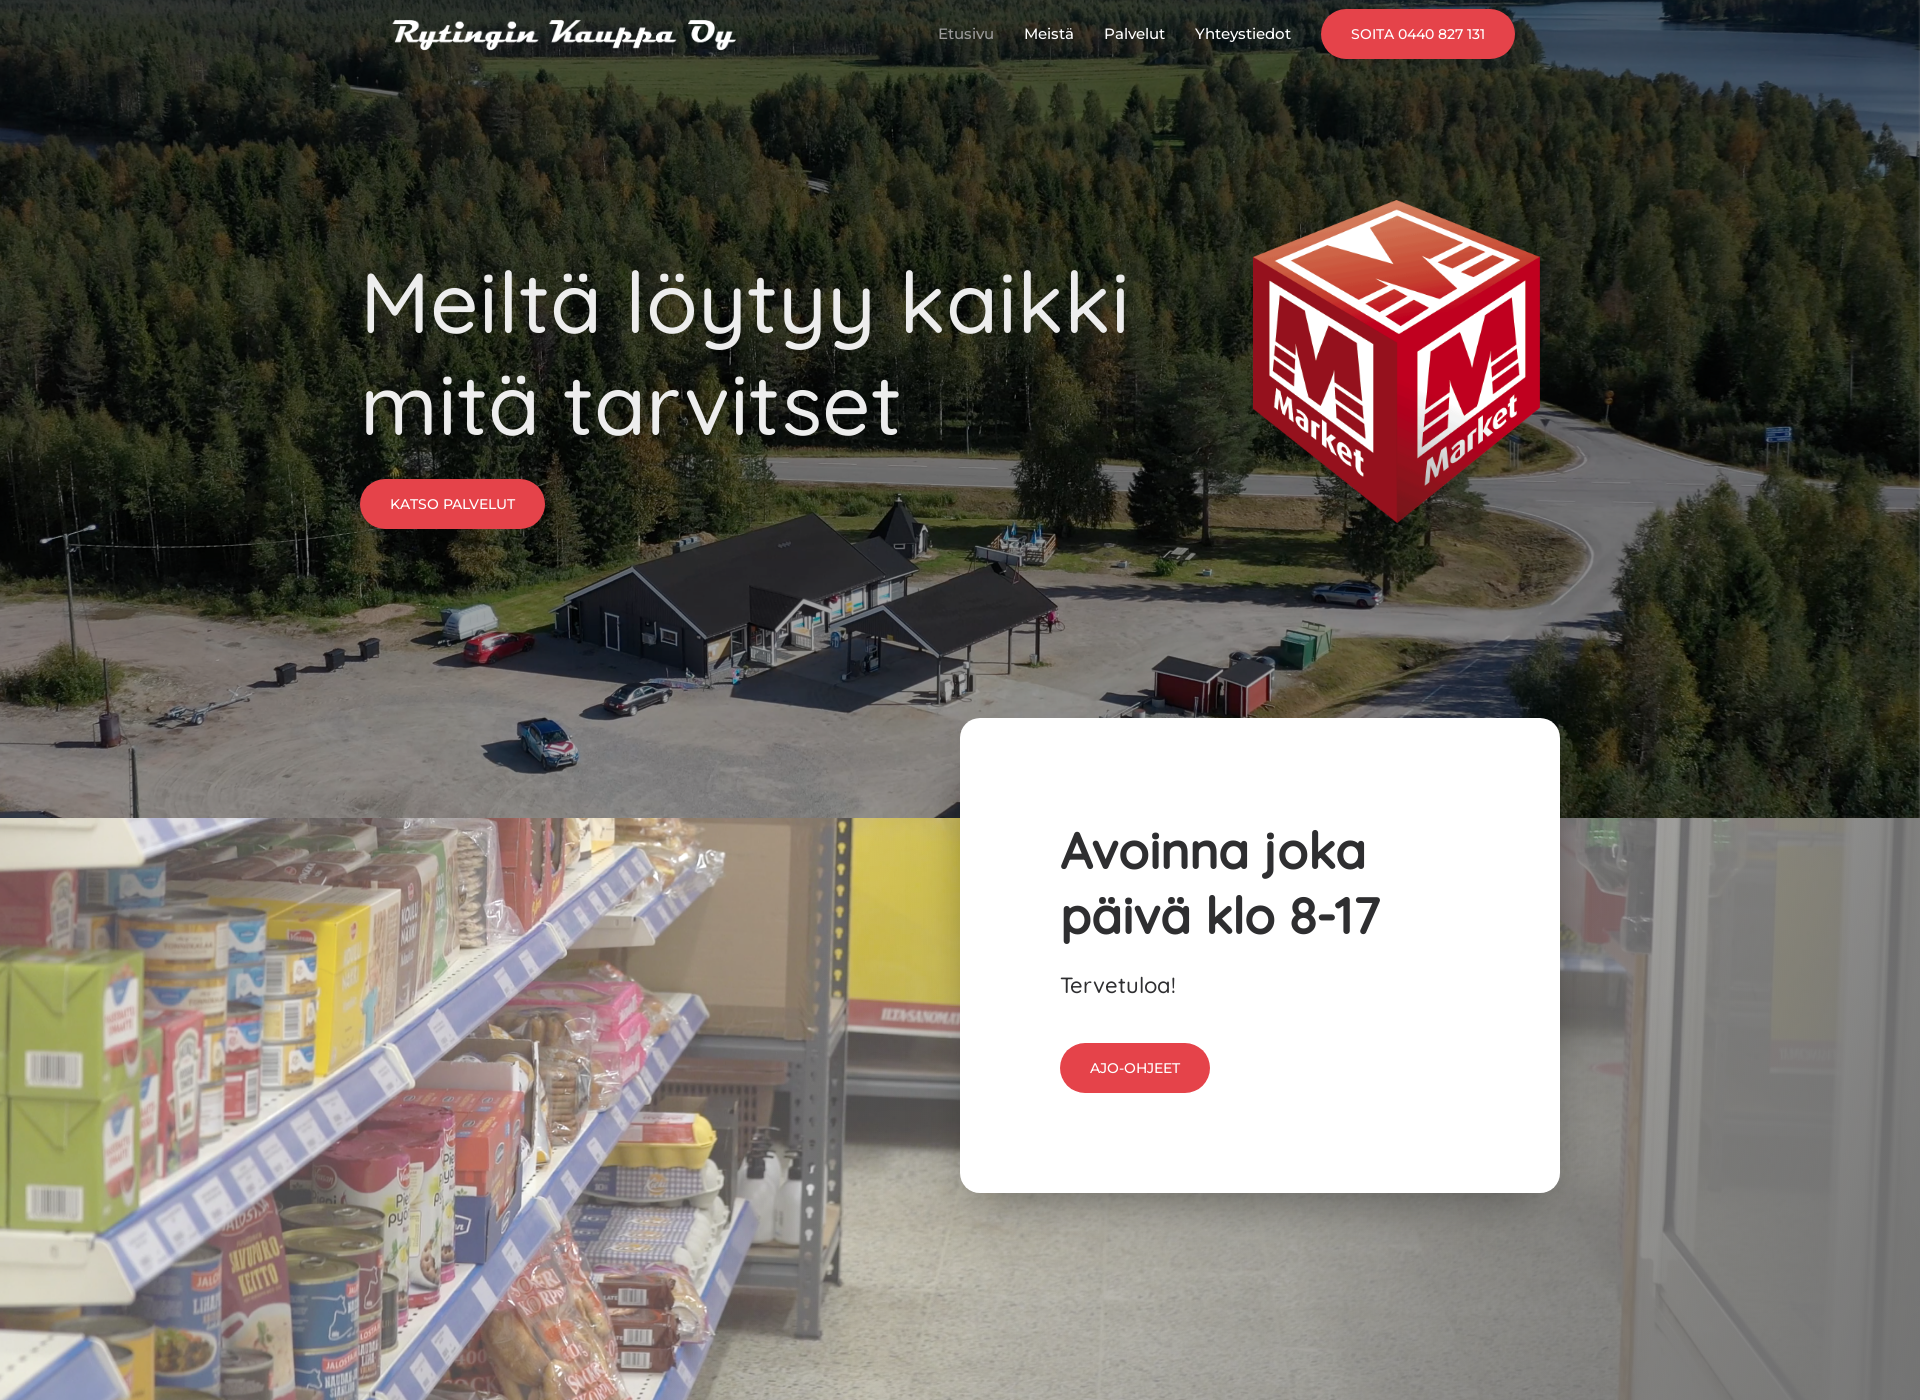 Näyttökuva rytinginkauppa.fi